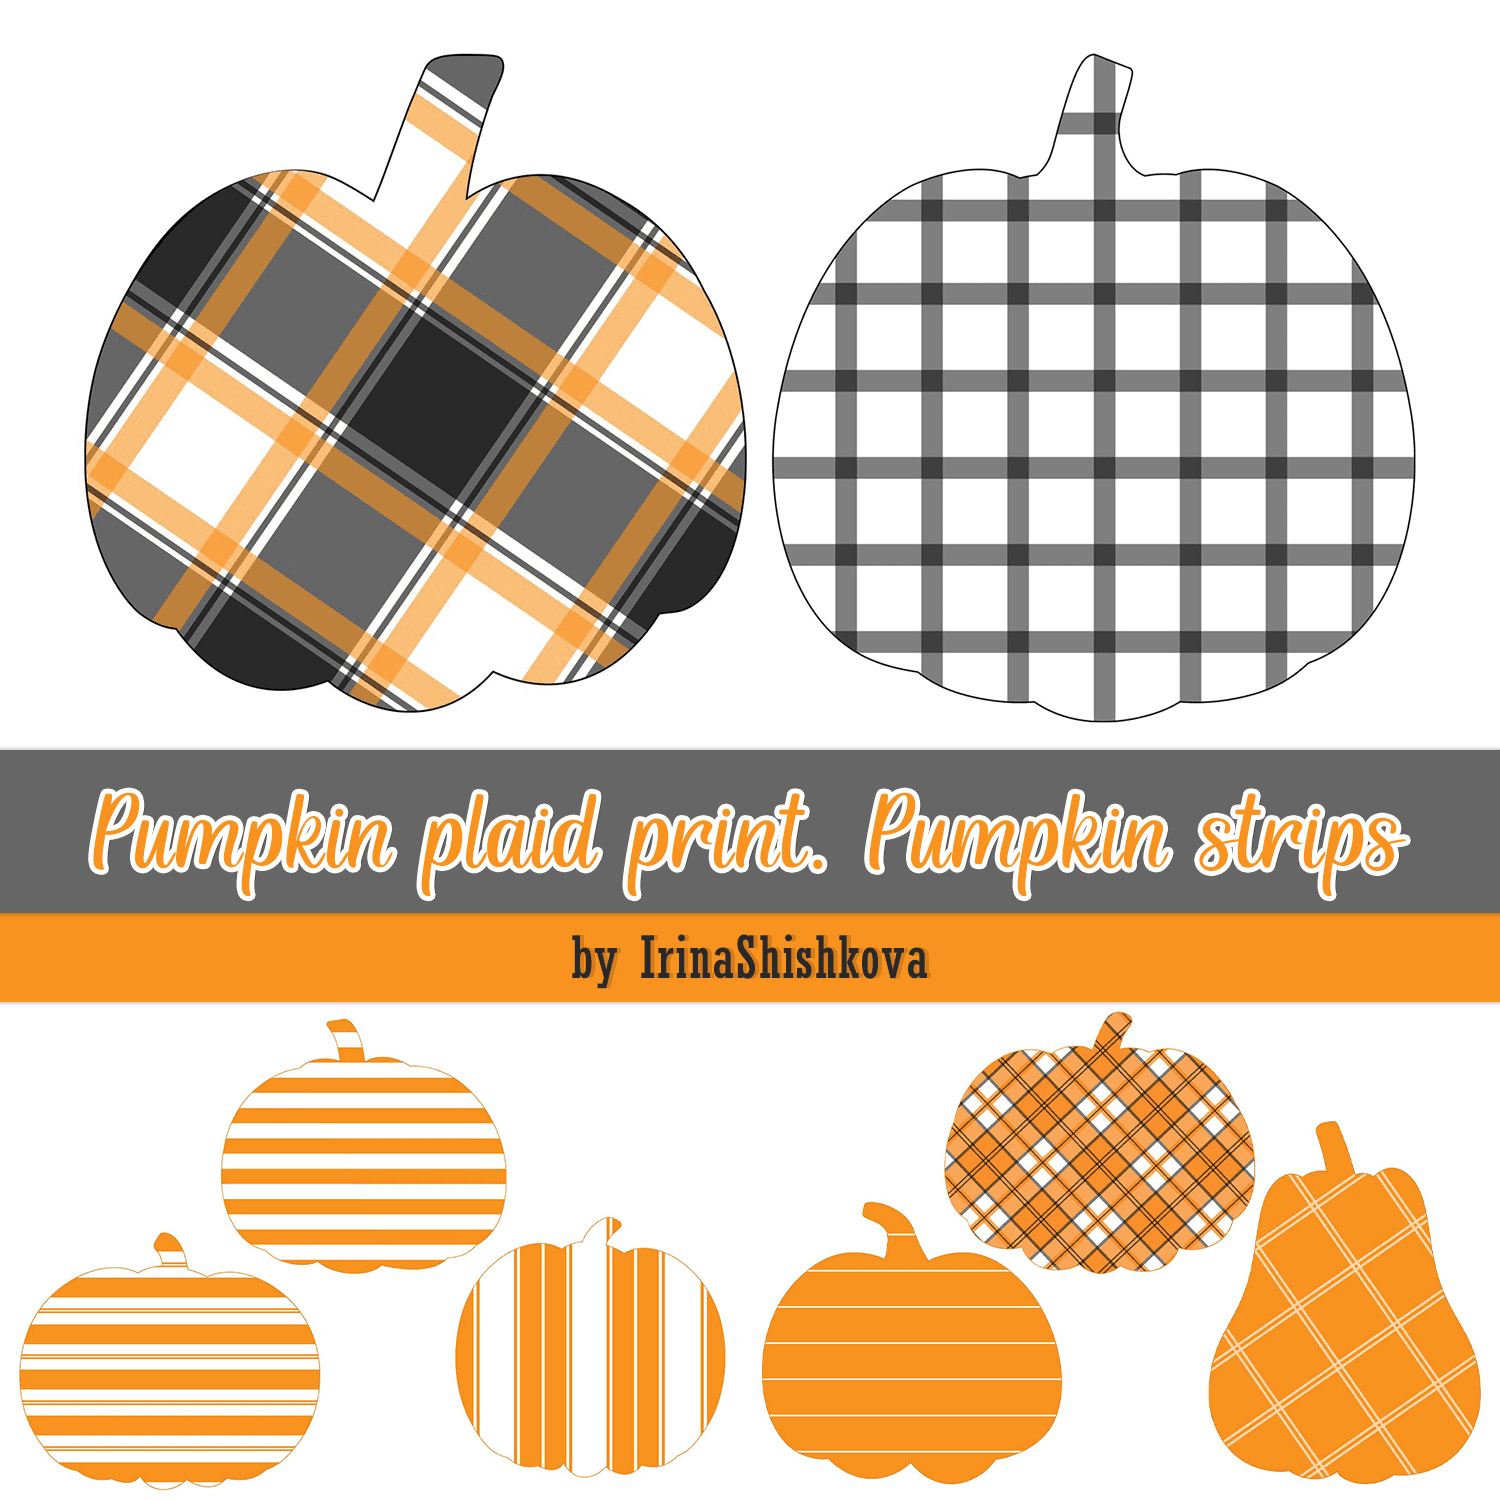 Pumpkin plaid print. Pumpkin strips cover.